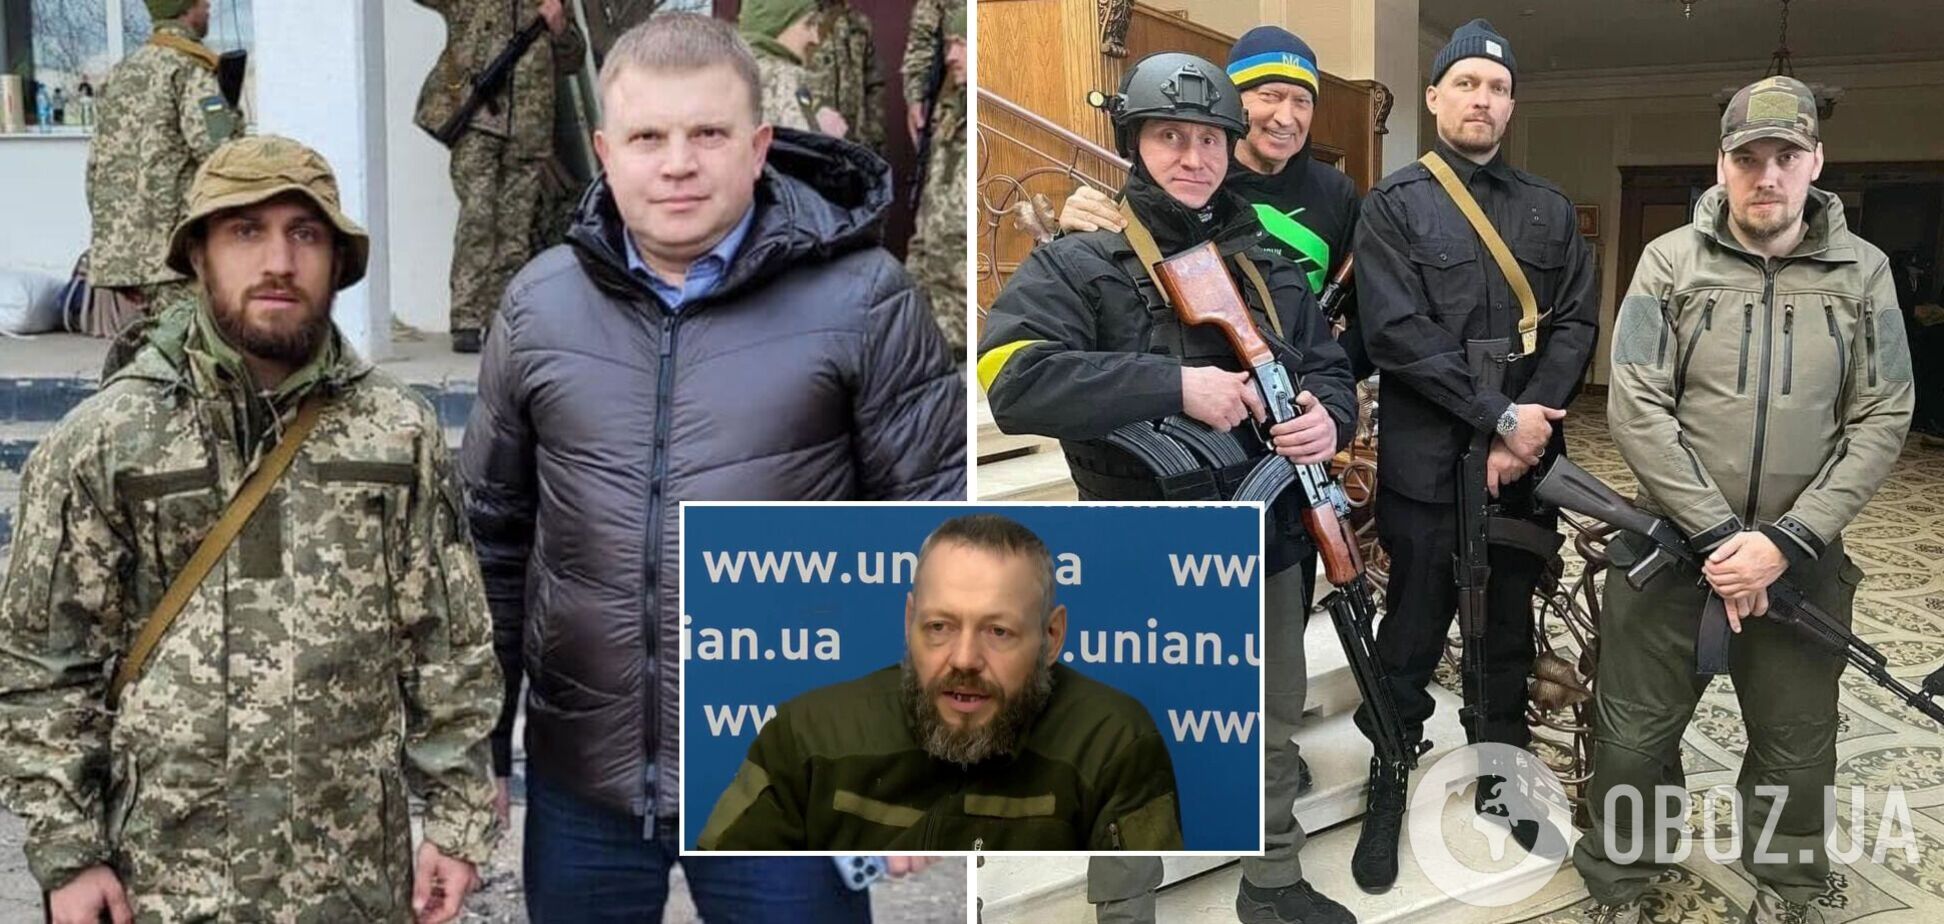 Александр Усик и Василий Ломаченко защищают Украину